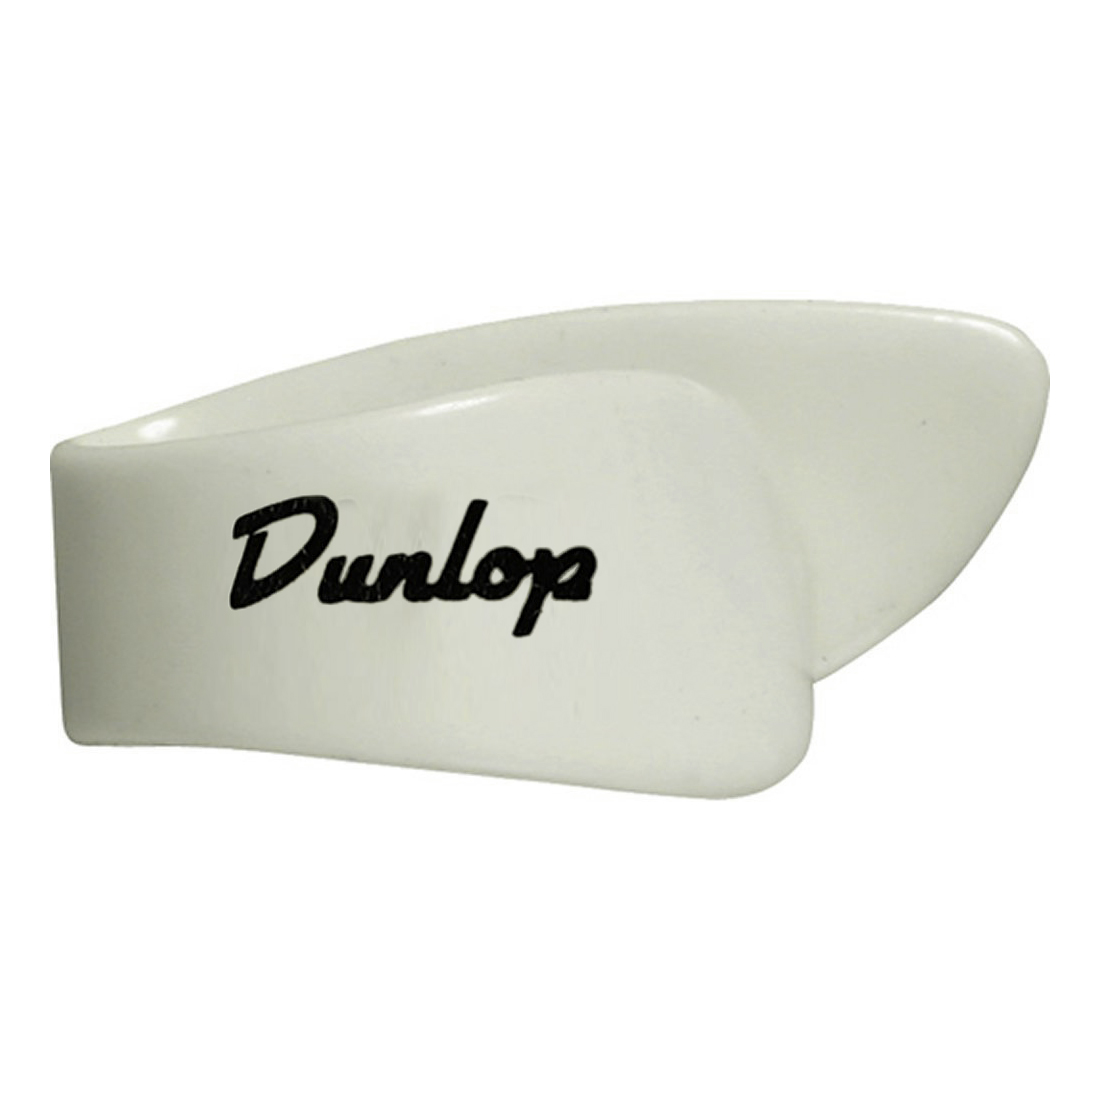 Dunlop - Onglet blanc large pour gaucher - 9013 L